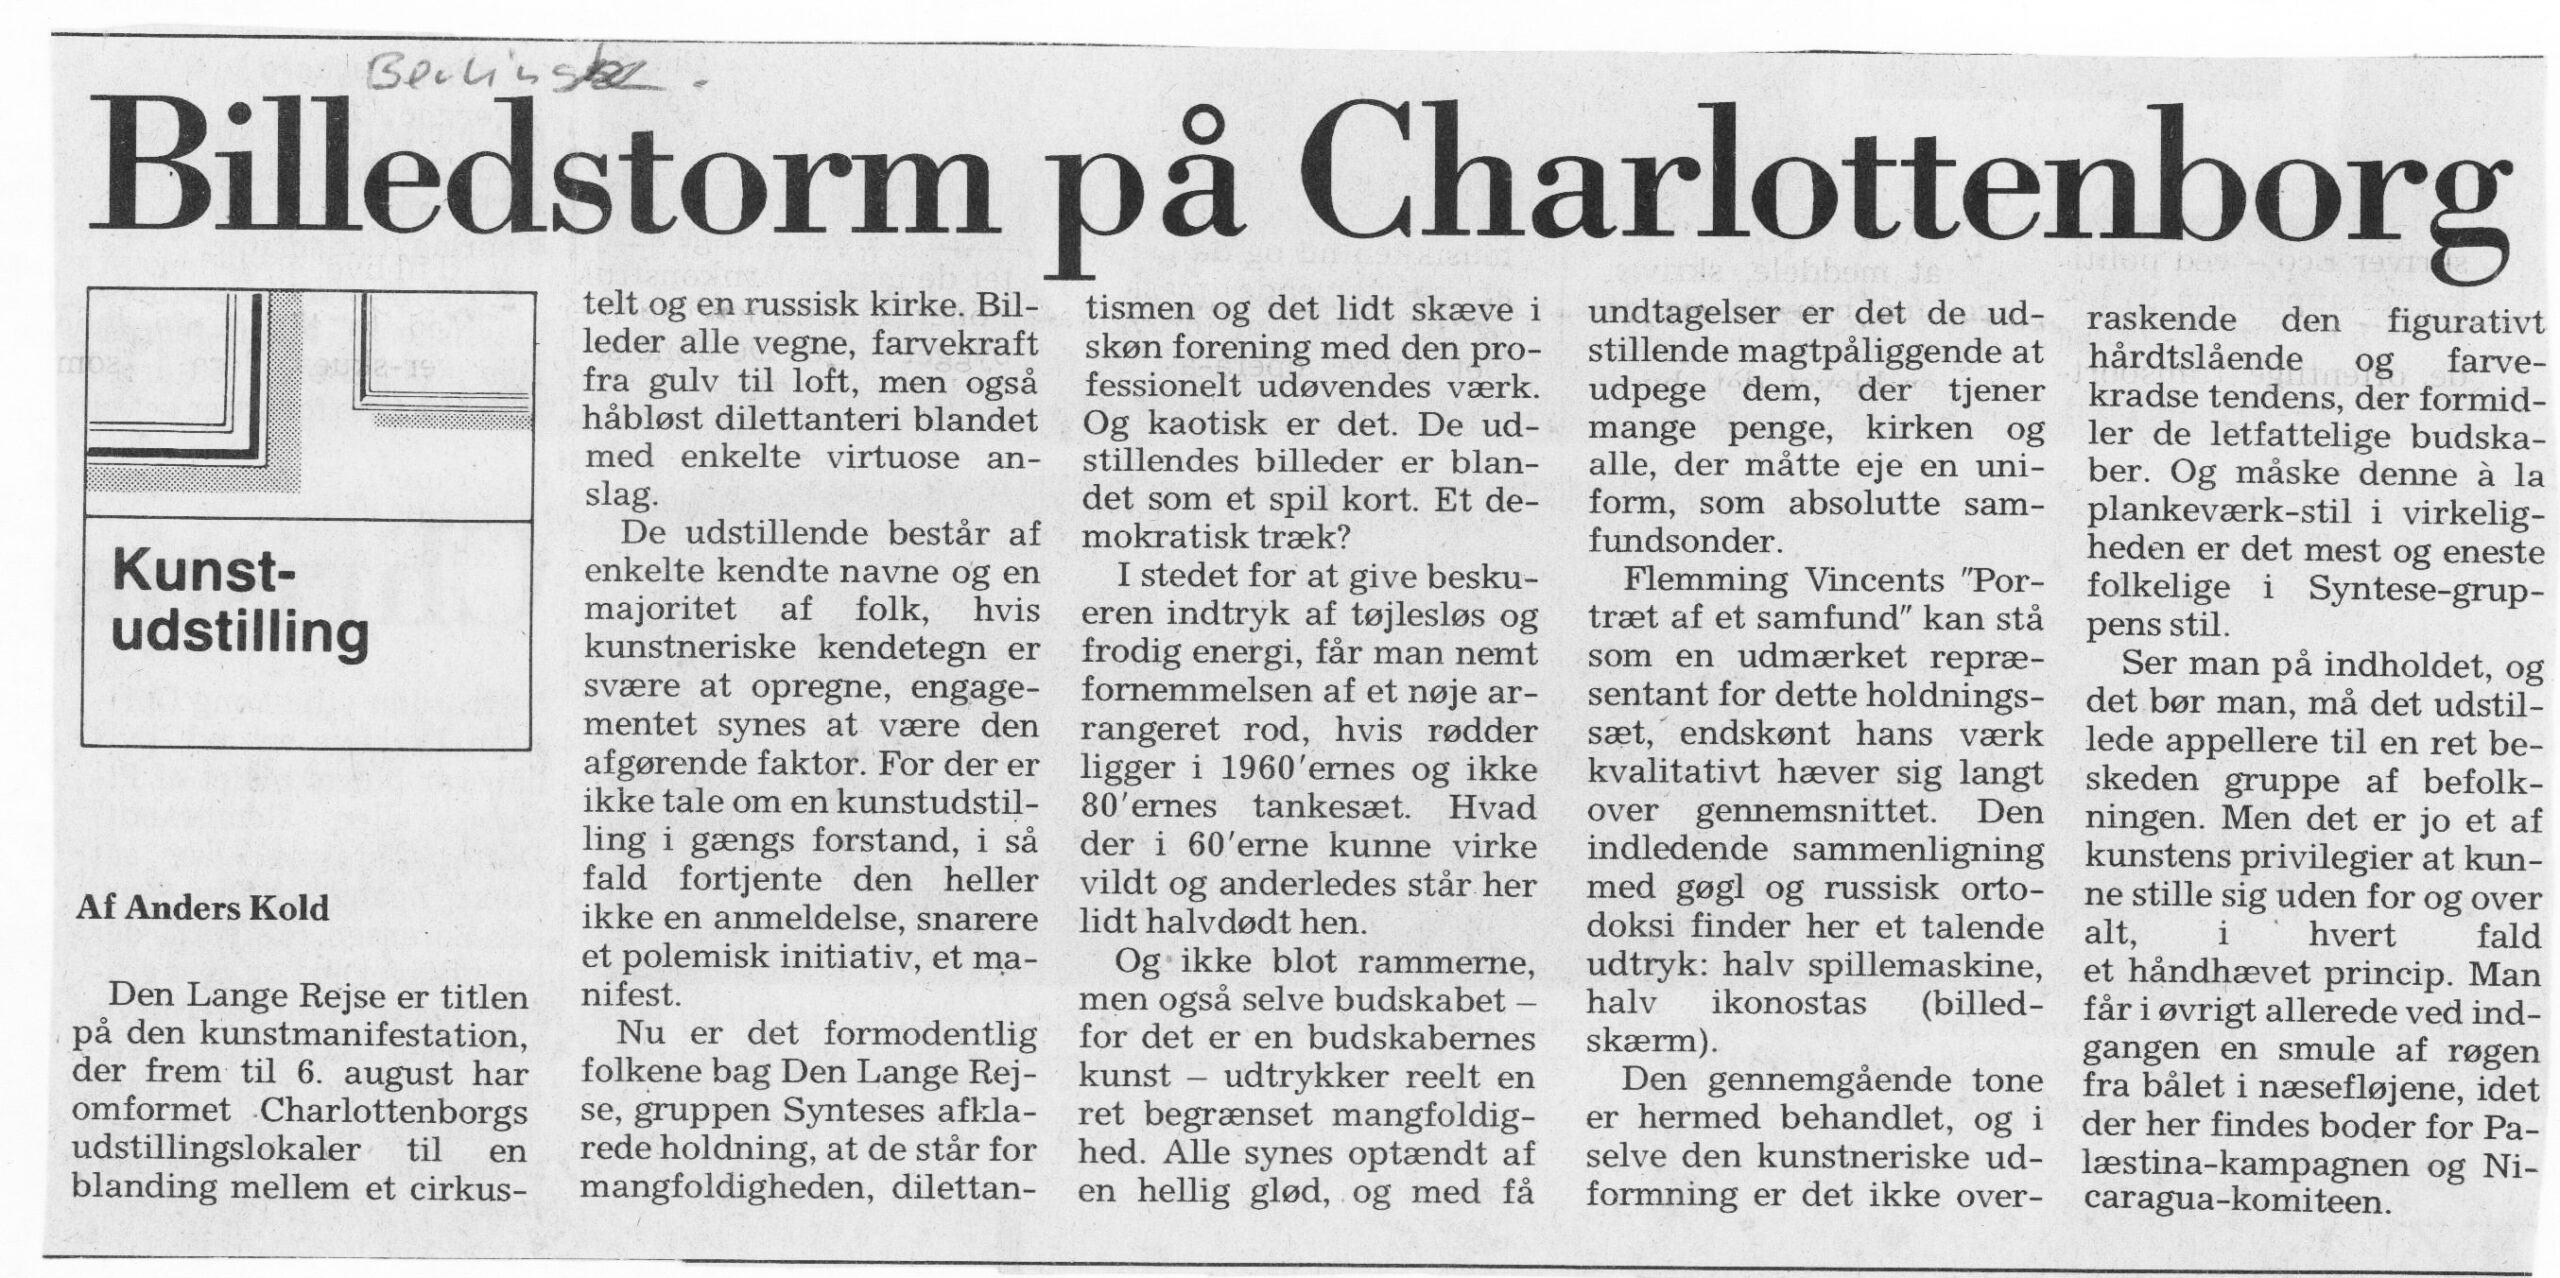 Billedstorm på Charlottenborg. Anmeldelse (Den Lange Rejse. Charlottenborg 1989, København). Anders Kold. Berlingske Tidende. Primo juli 1989.